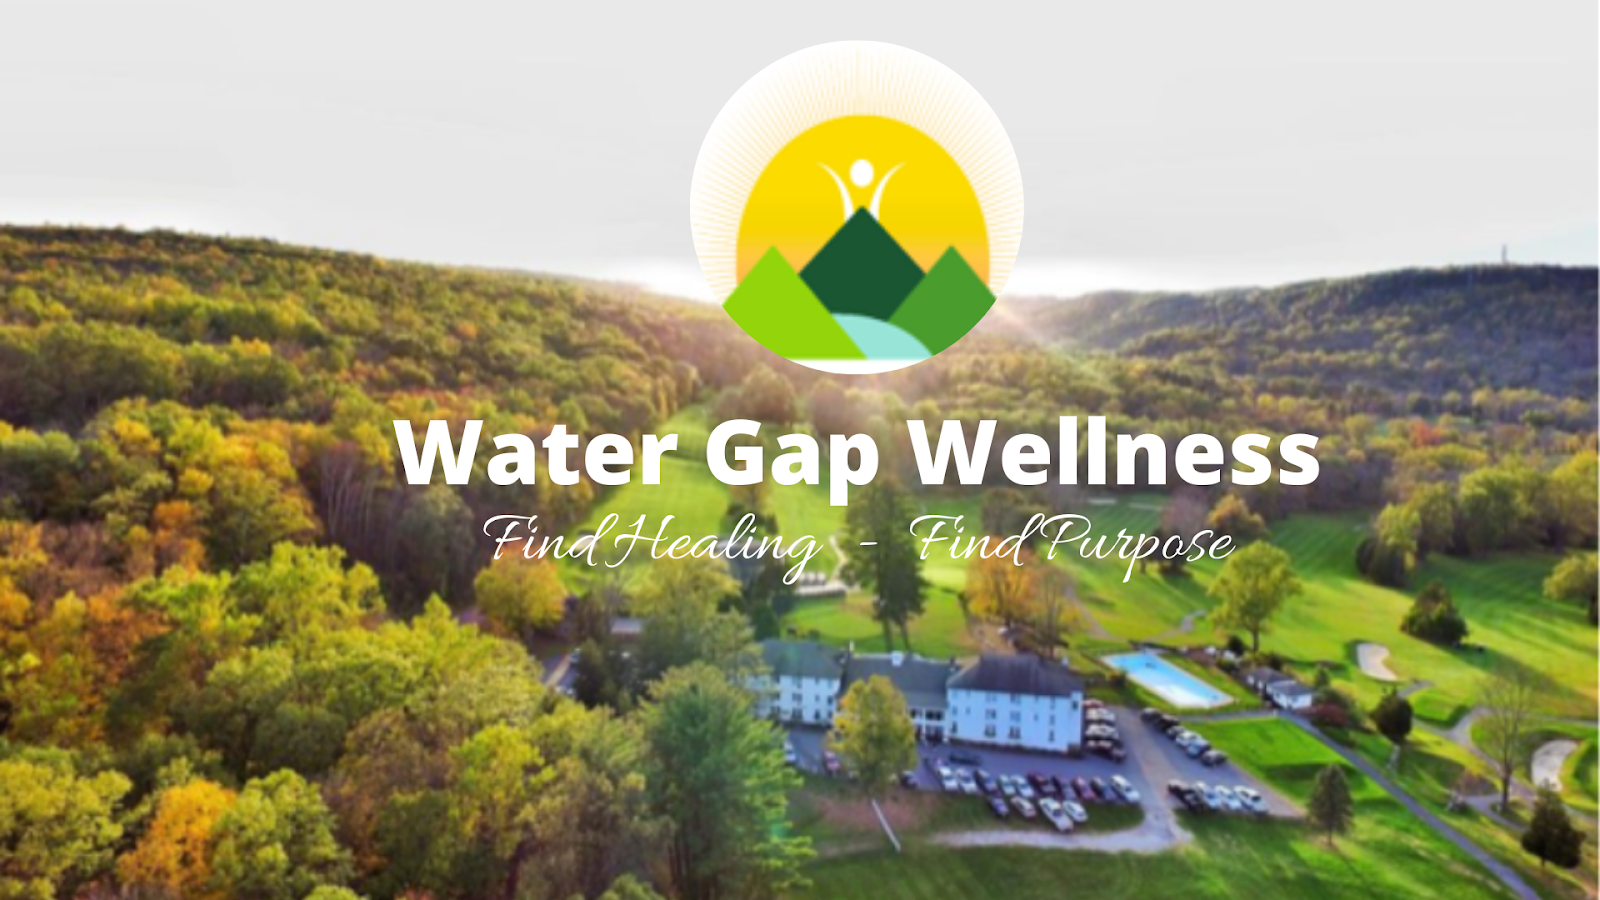 Water Gap Wellness Center